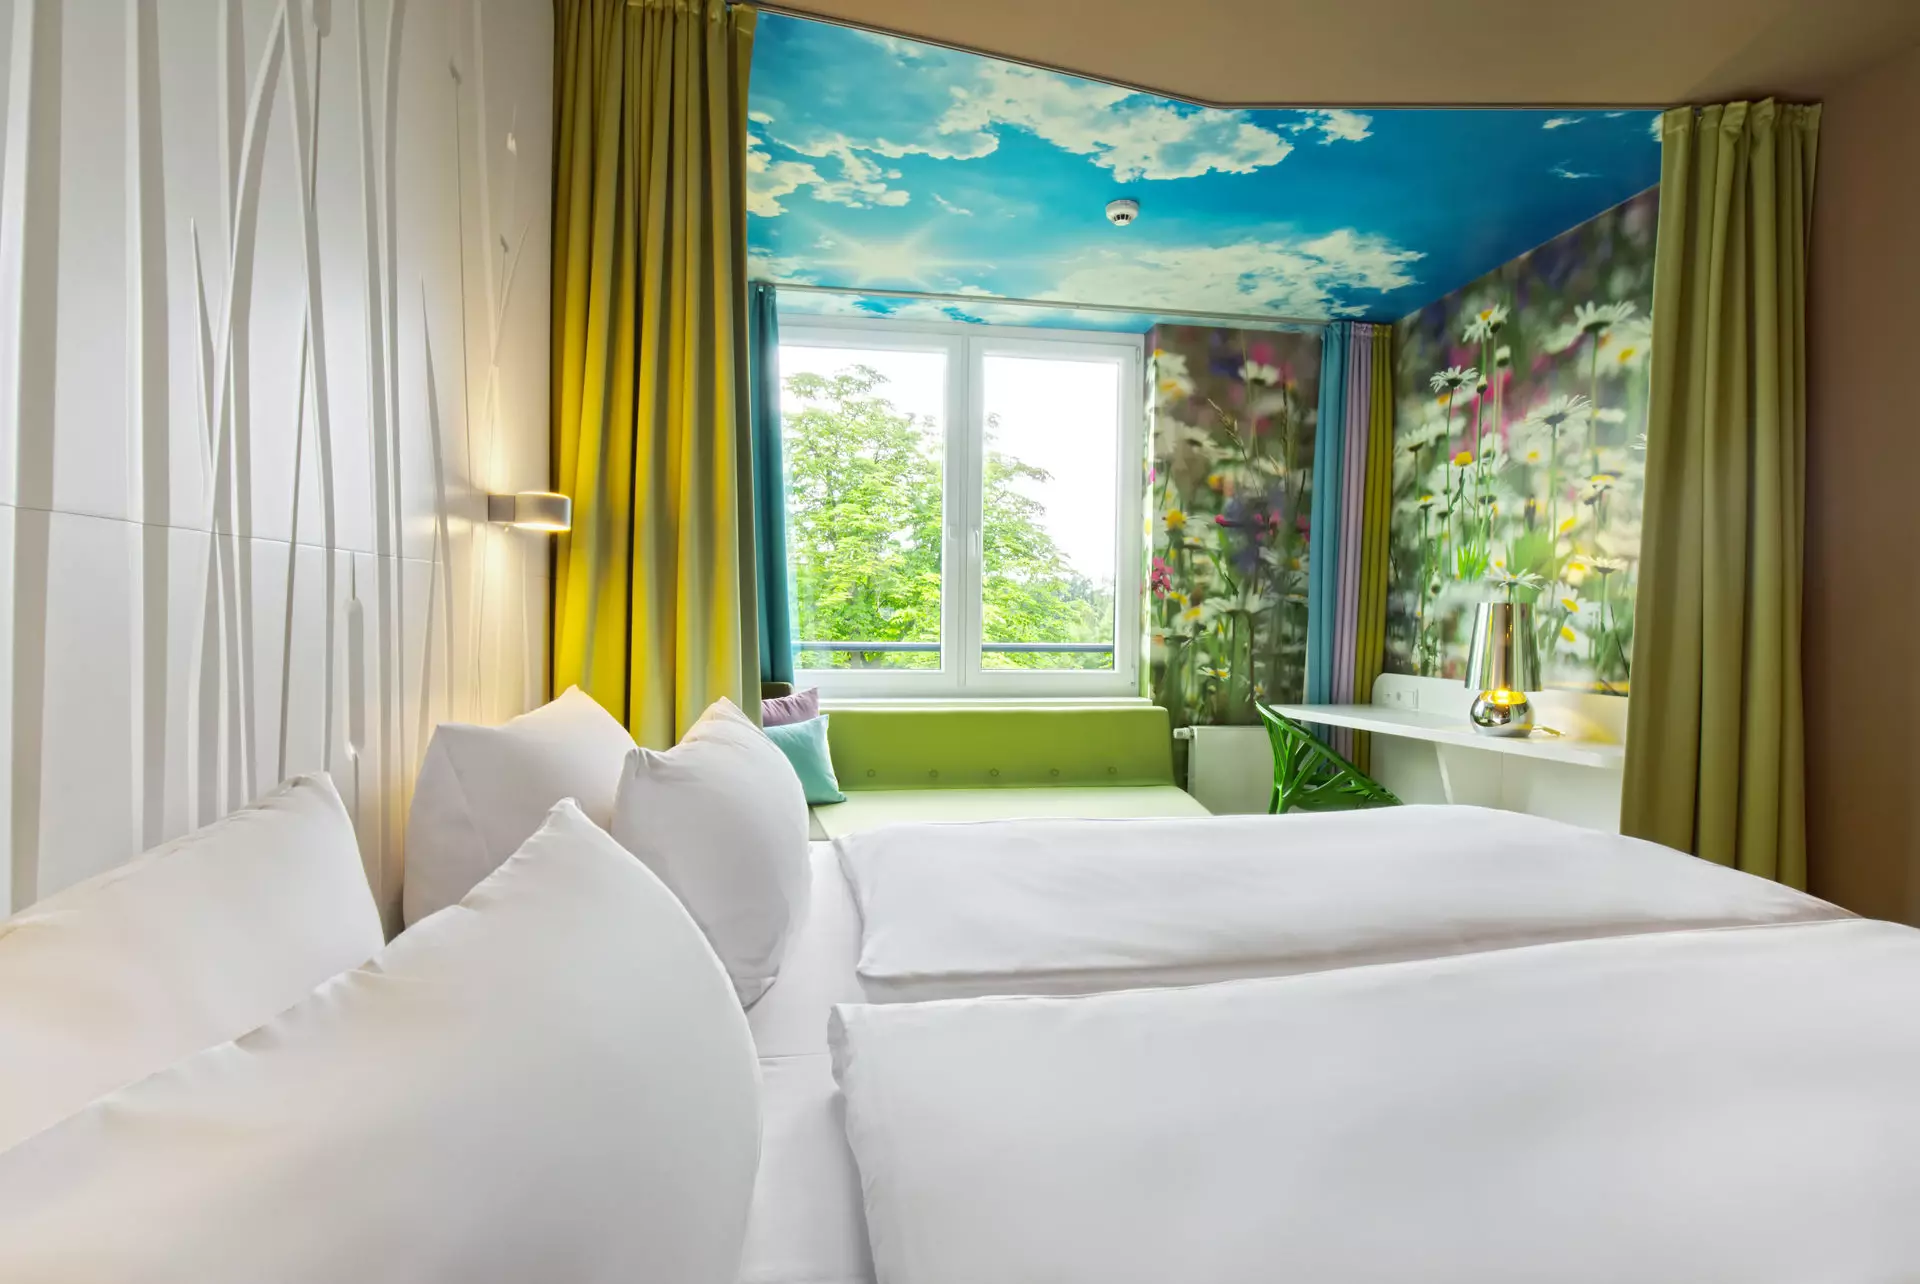 Blick über ein mit weißer Bettwäsche bezogenes Doppelbett vor einer weißen Rückwand mit Struktur.  Im Hintergrund ist ein von blau-grünen und mit Blumenmuster verzierten Wänden umrahmtes Fenster mit Blick ins Grüne zu erkennen. Die Zimmerdecke vor dem Fenster ist mit Himmels-Motiv bedruckt.